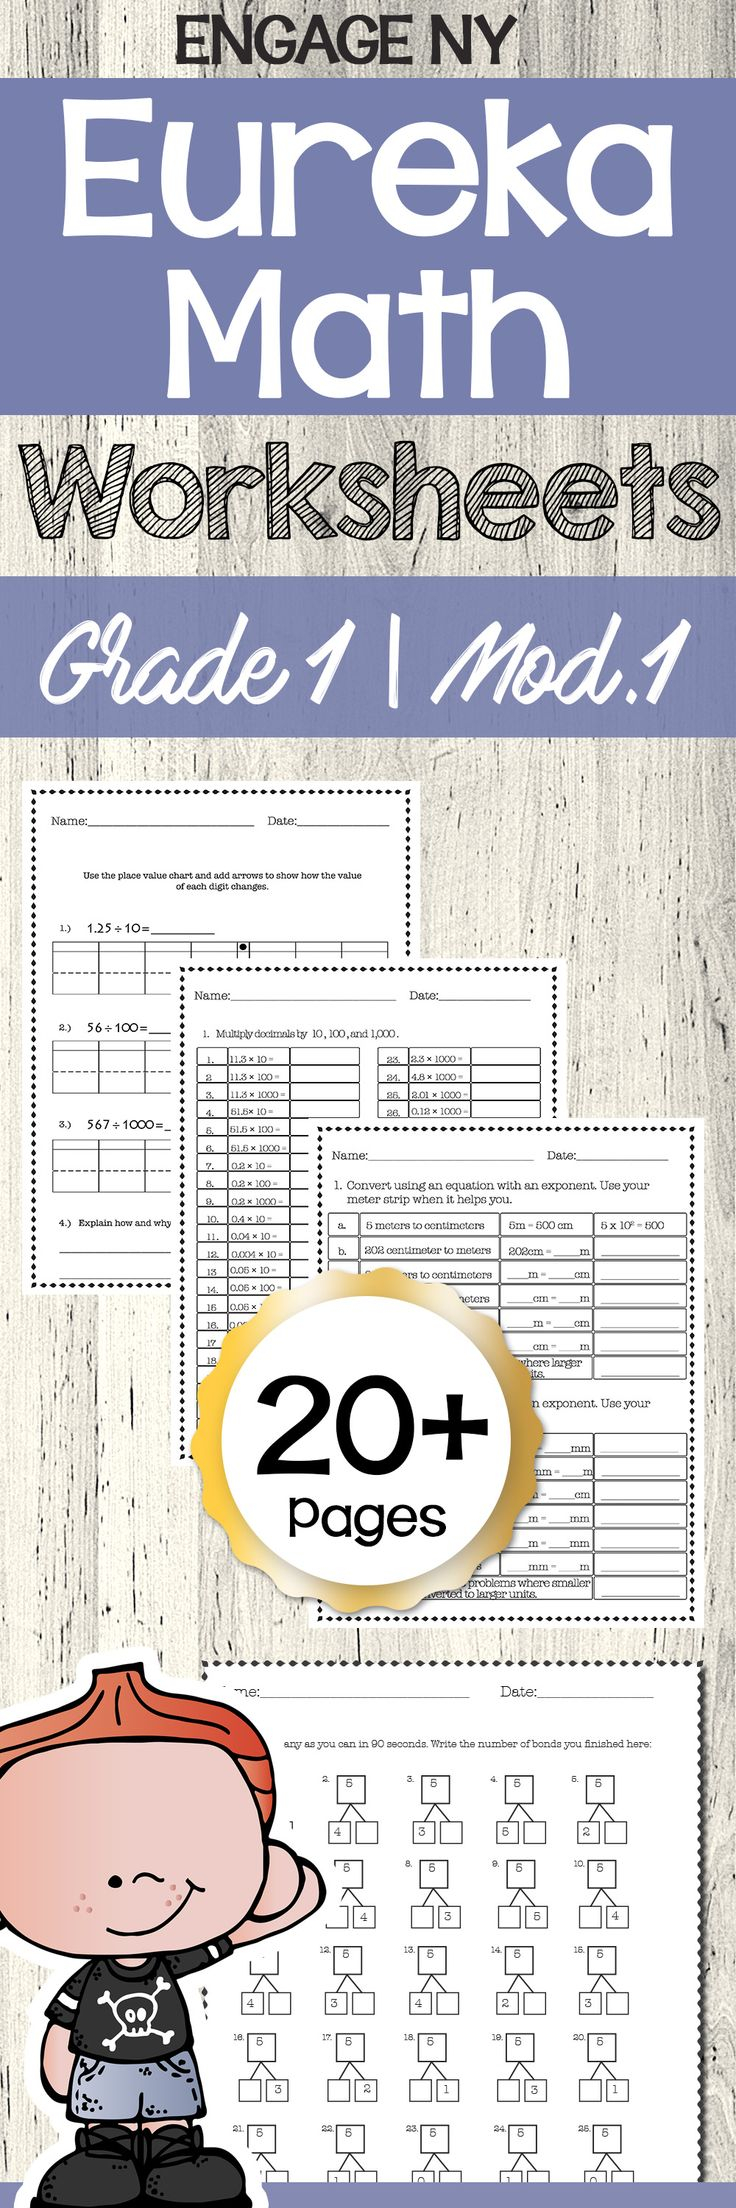 Eureka Math Engage NY 1st Grade Extra Worksheets MODULE 1